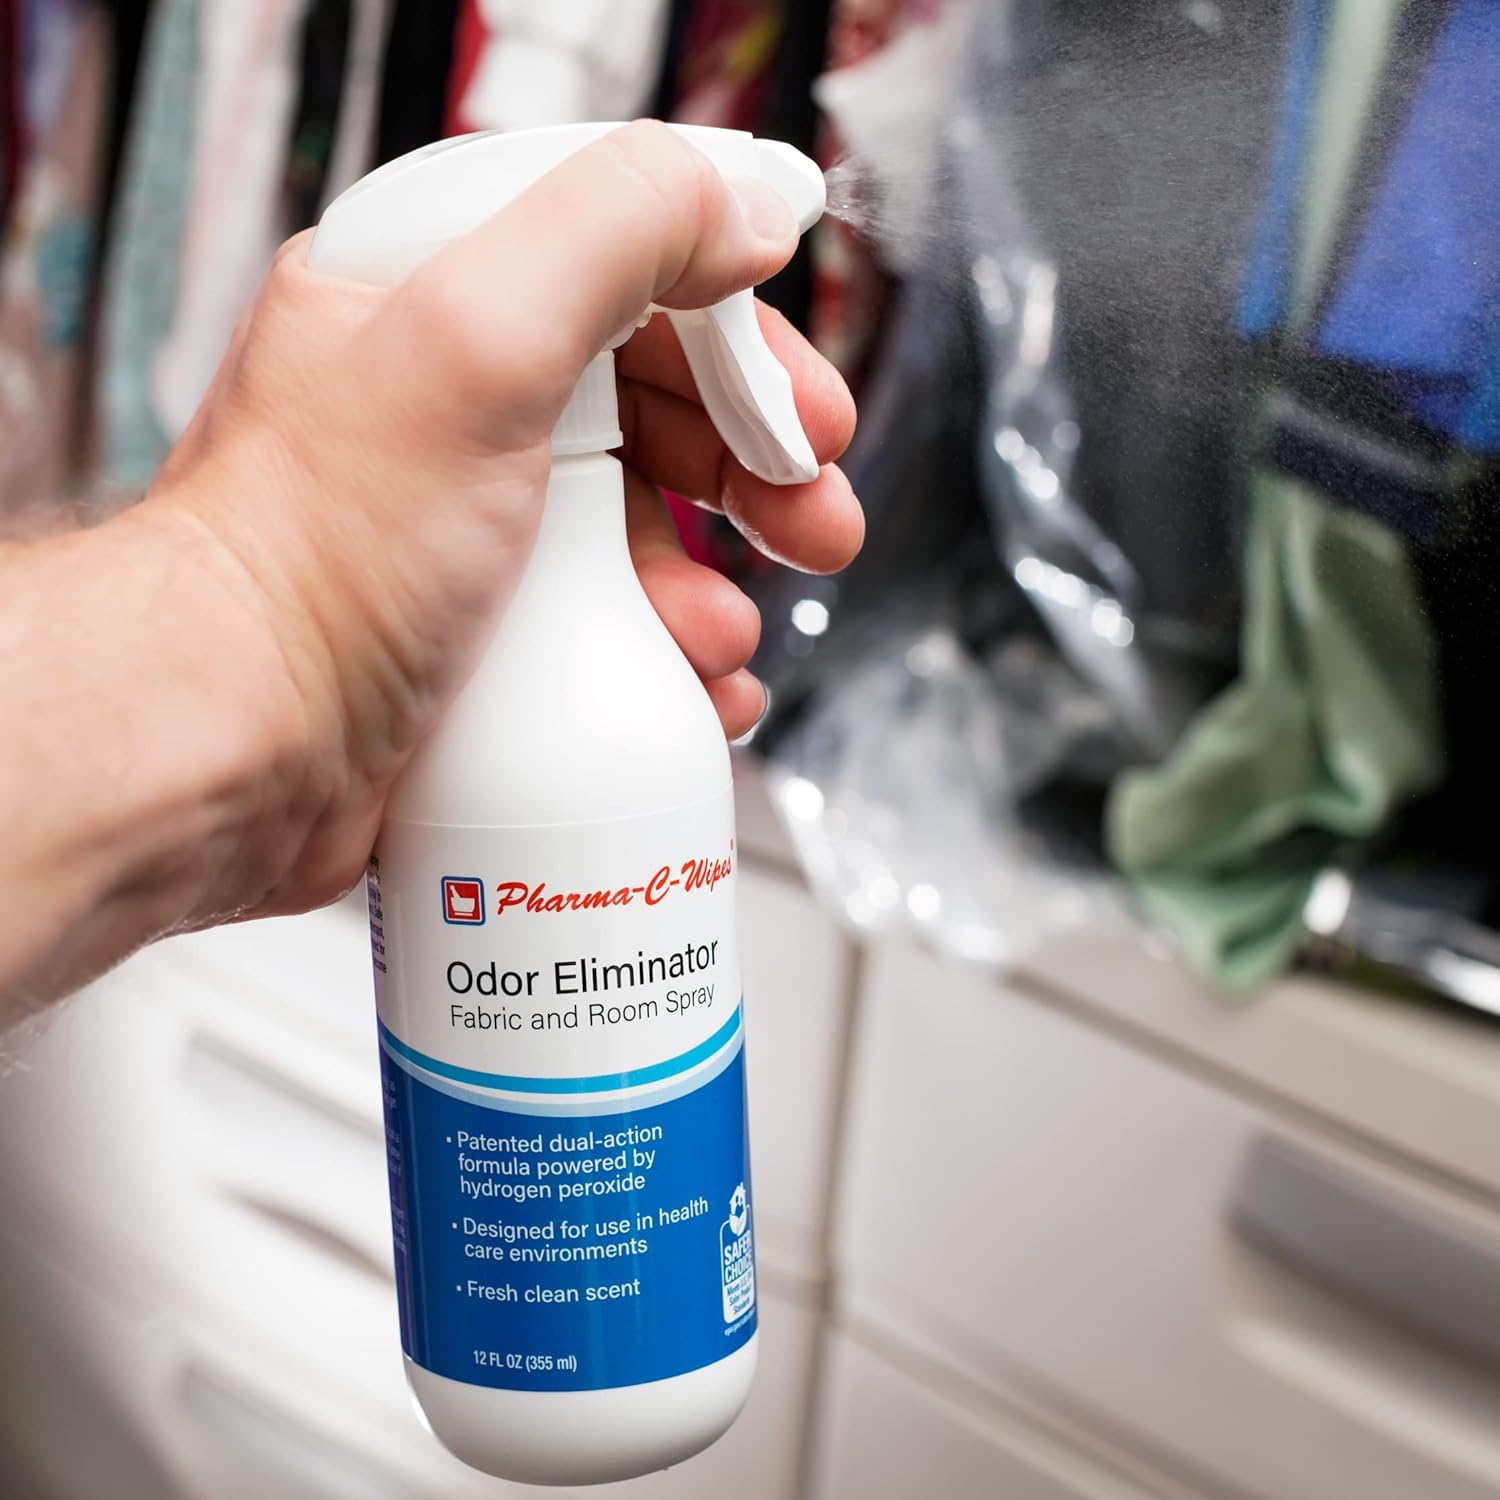 Pharma-C Odor Eliminator [6-12oz Bottles] - Bulk Fabric & Room Spray -Extra Strength Multipurpose Air Freshener & Fabric Refresher- Neutralize Deodorize : Health & Household